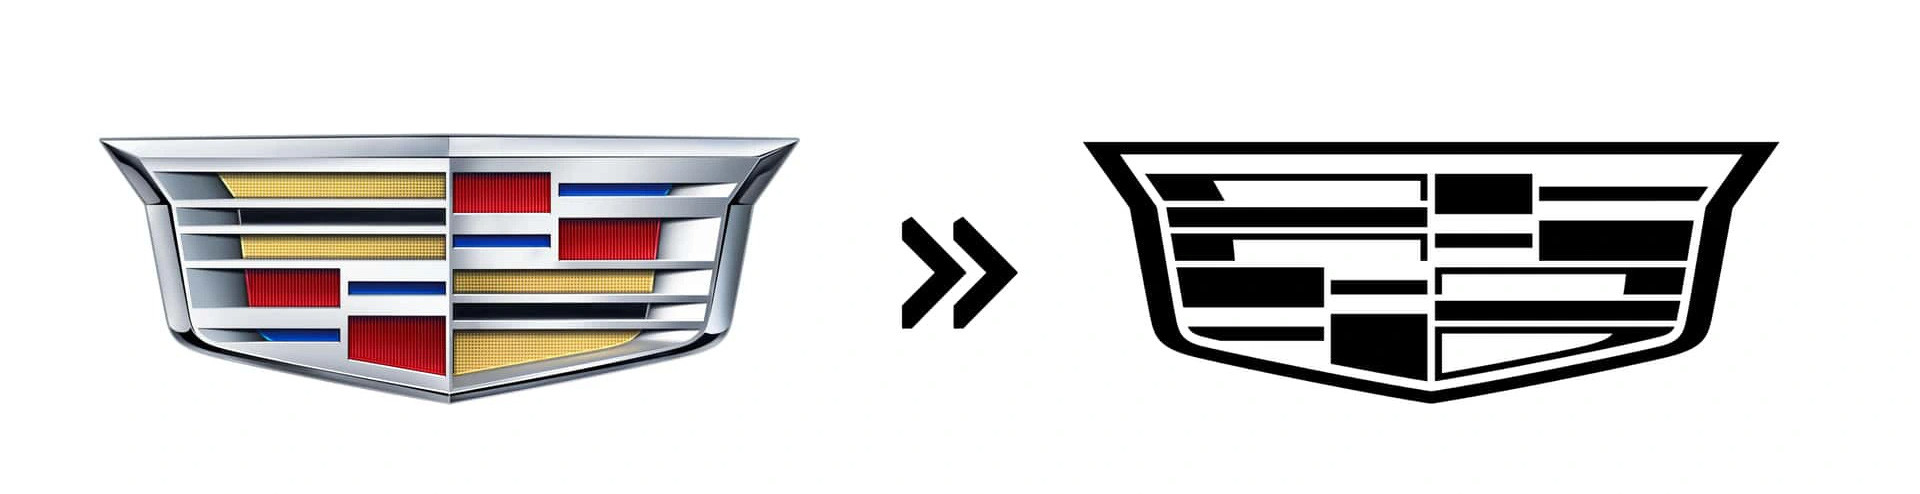 Cadillac (2021): Cadillac đã mạnh tay làm lại logo của mình vào 2 năm trước, khi toàn bộ màu sắc bên trong đã bị loại bỏ và thay bằng các tông xám - đen - trắng. Giao diện 3D cũng được thay bằng loại 2D đơn giản hơn - Ảnh: Motor1